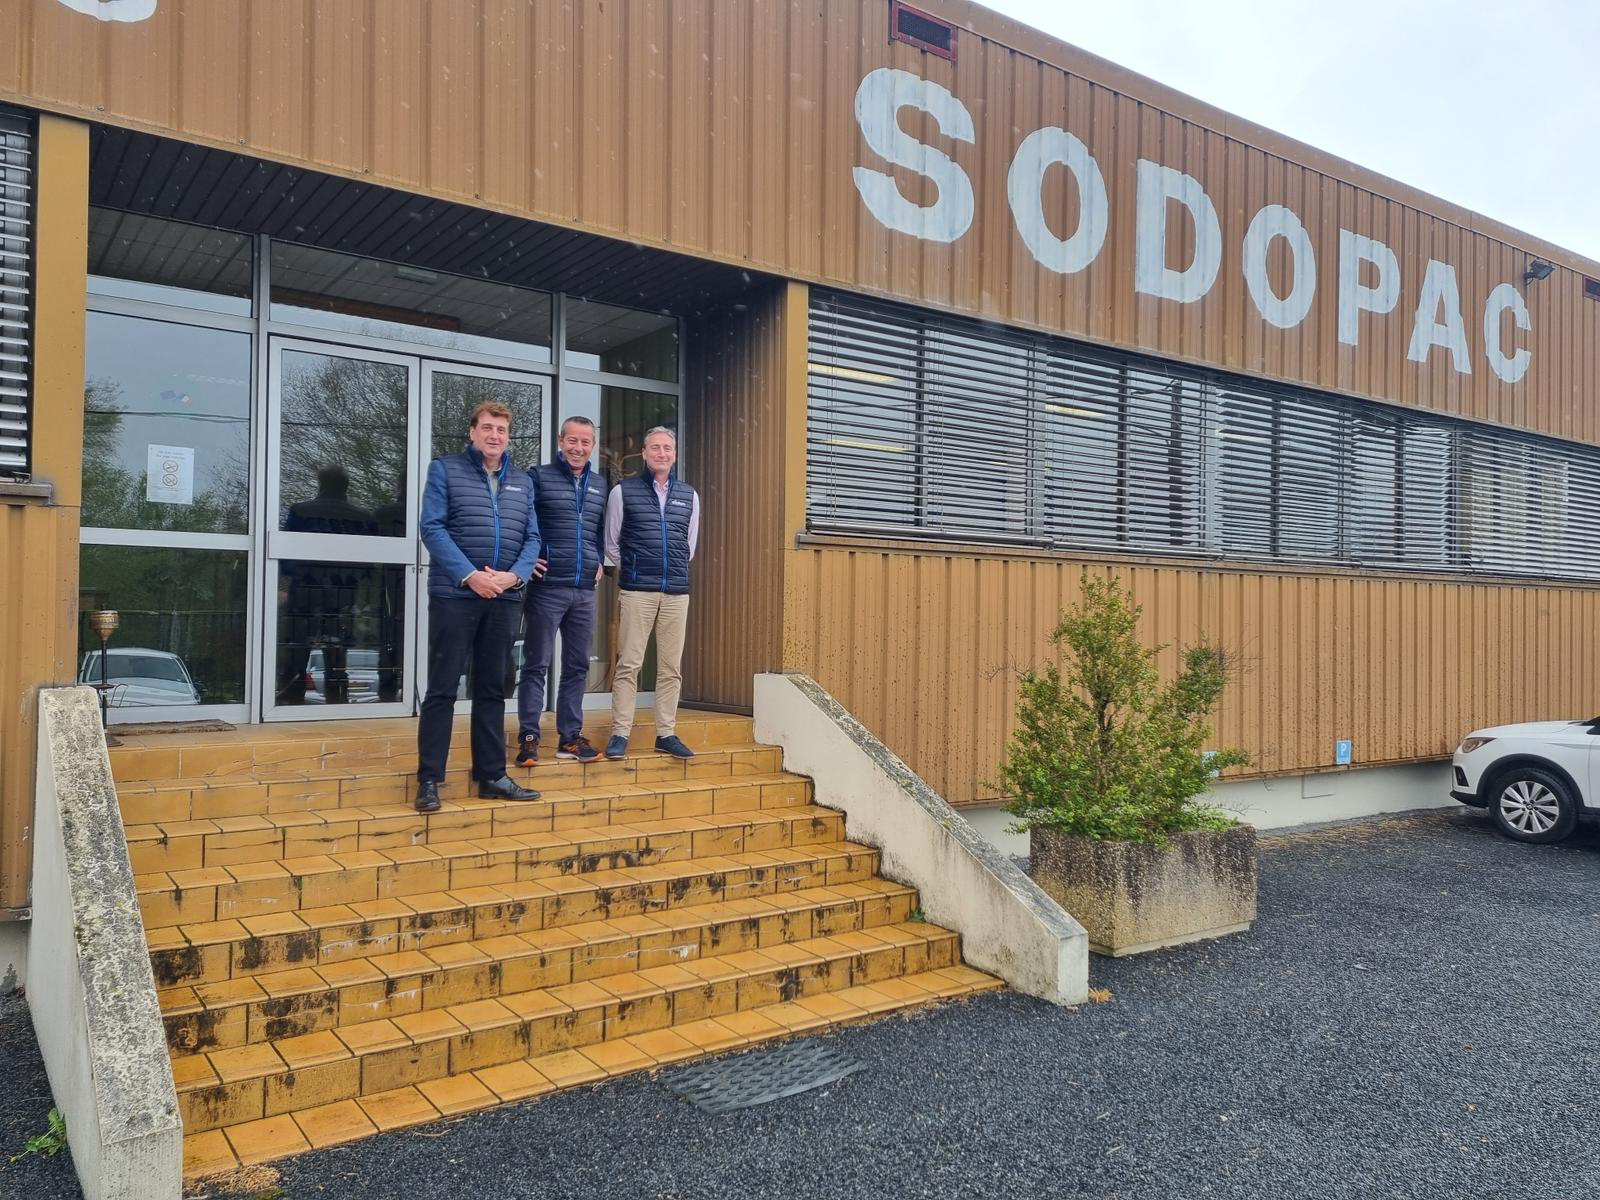 Depuis le mois d'avril 2023, l'entreprise Sodopac, spécialisée dans la production de chaussons, notamment sous sa marque Airplum, a changé de propriétaires. À sa tête, trois associés, Frédéric Guiral de Haas, Hervé Accart, et Xavier Paulin, qui posent devant les locaux de l'entreprise située à Augignac, dans le Périgord Vert.